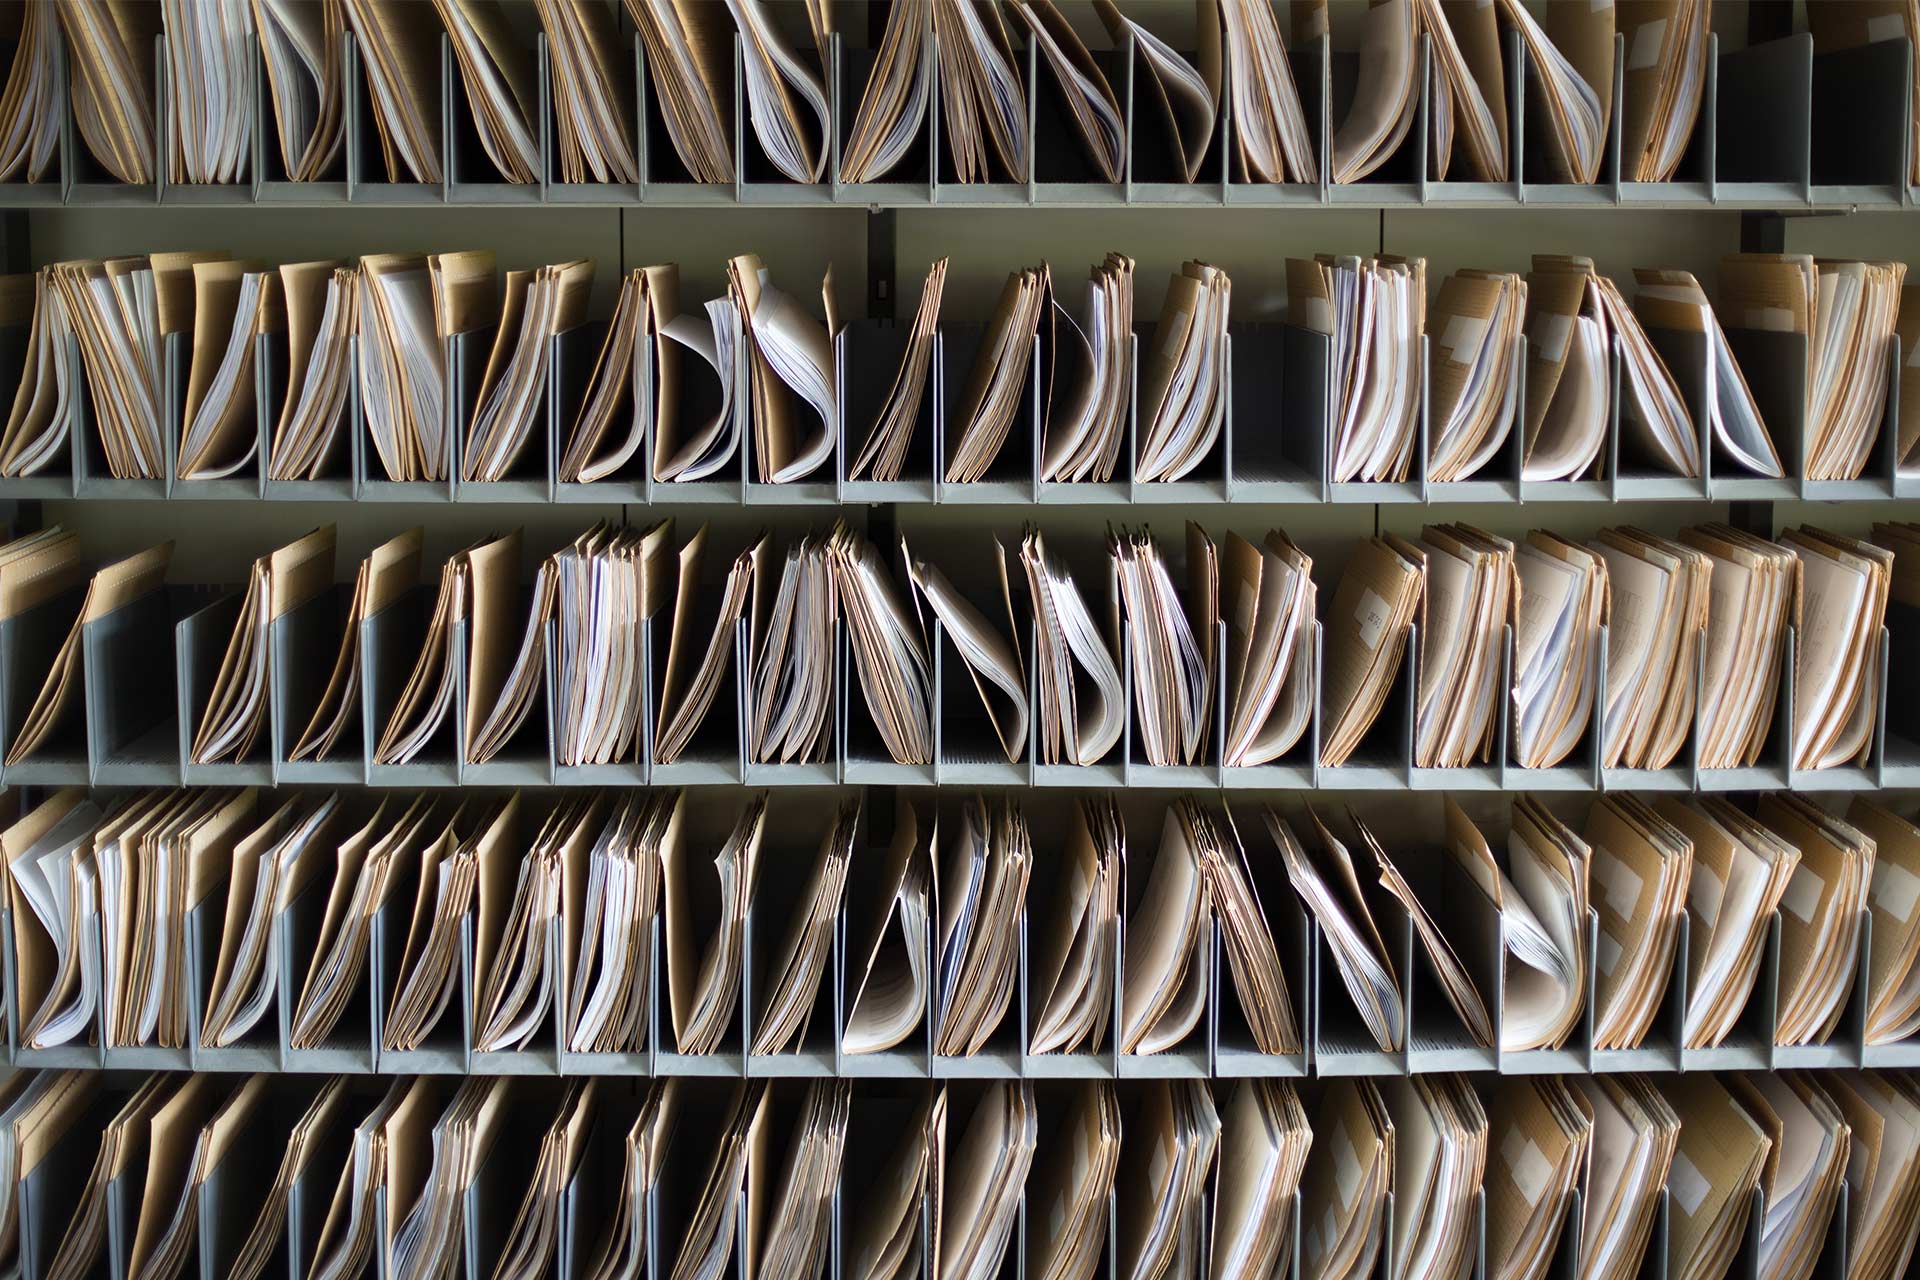 Prateleiras de documentos em papel em pastas organizadas em compartimentos.